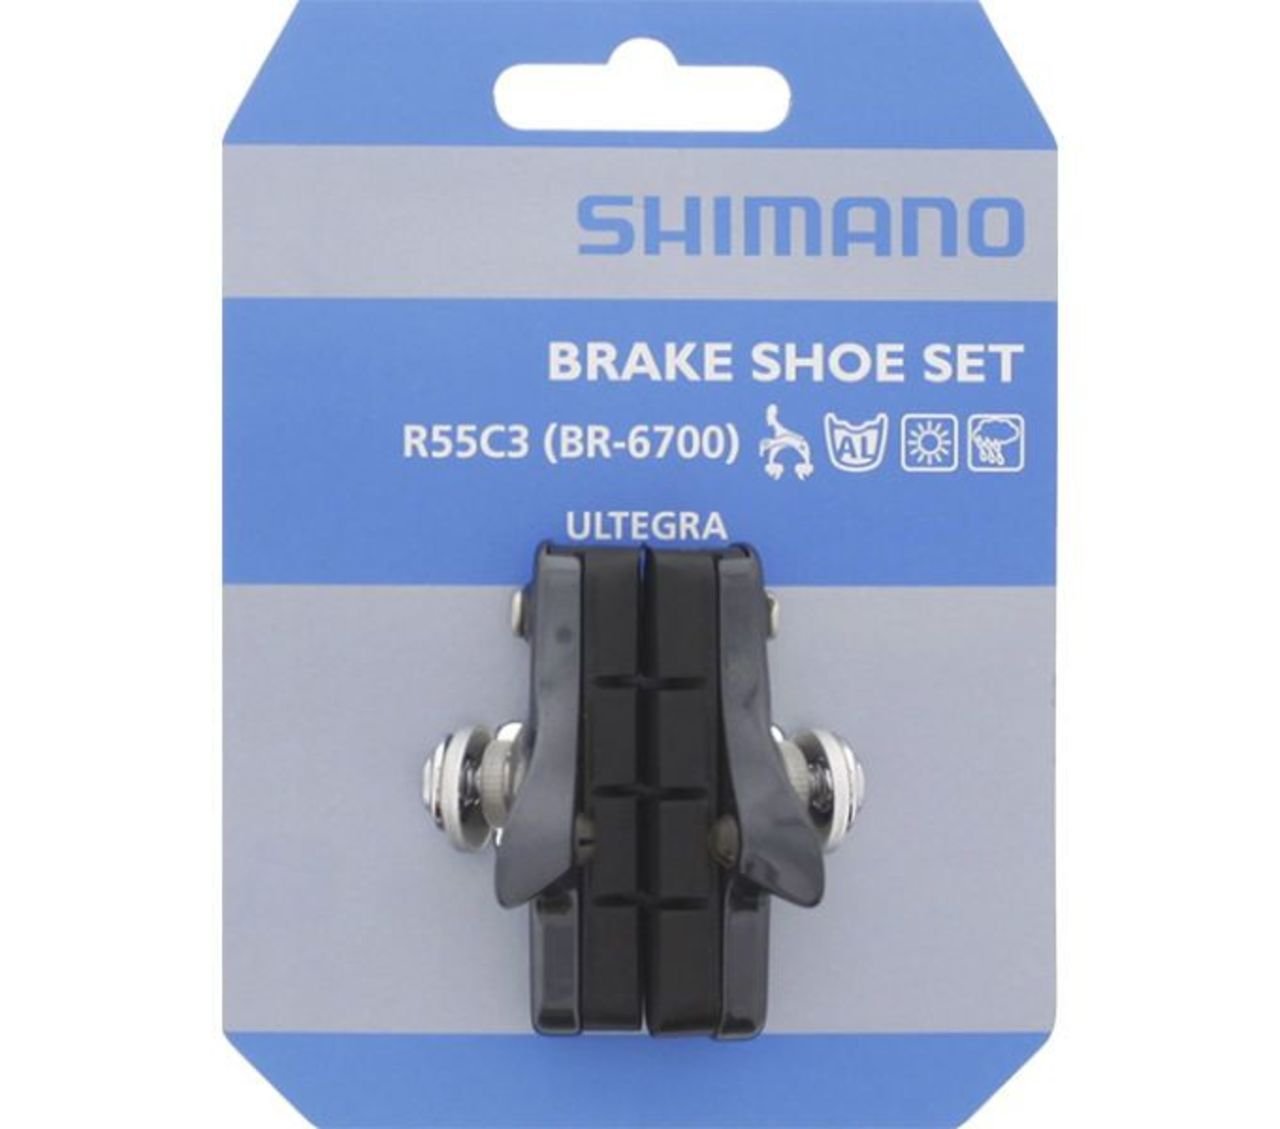 Тормозные колодки Shimano, brake pad, R55C3, Cartridge, for BR-6700, for aluminium rim, 1 pair, A154773 колодки вело тормозные mavic для карбоновых ободов cxr 00064625